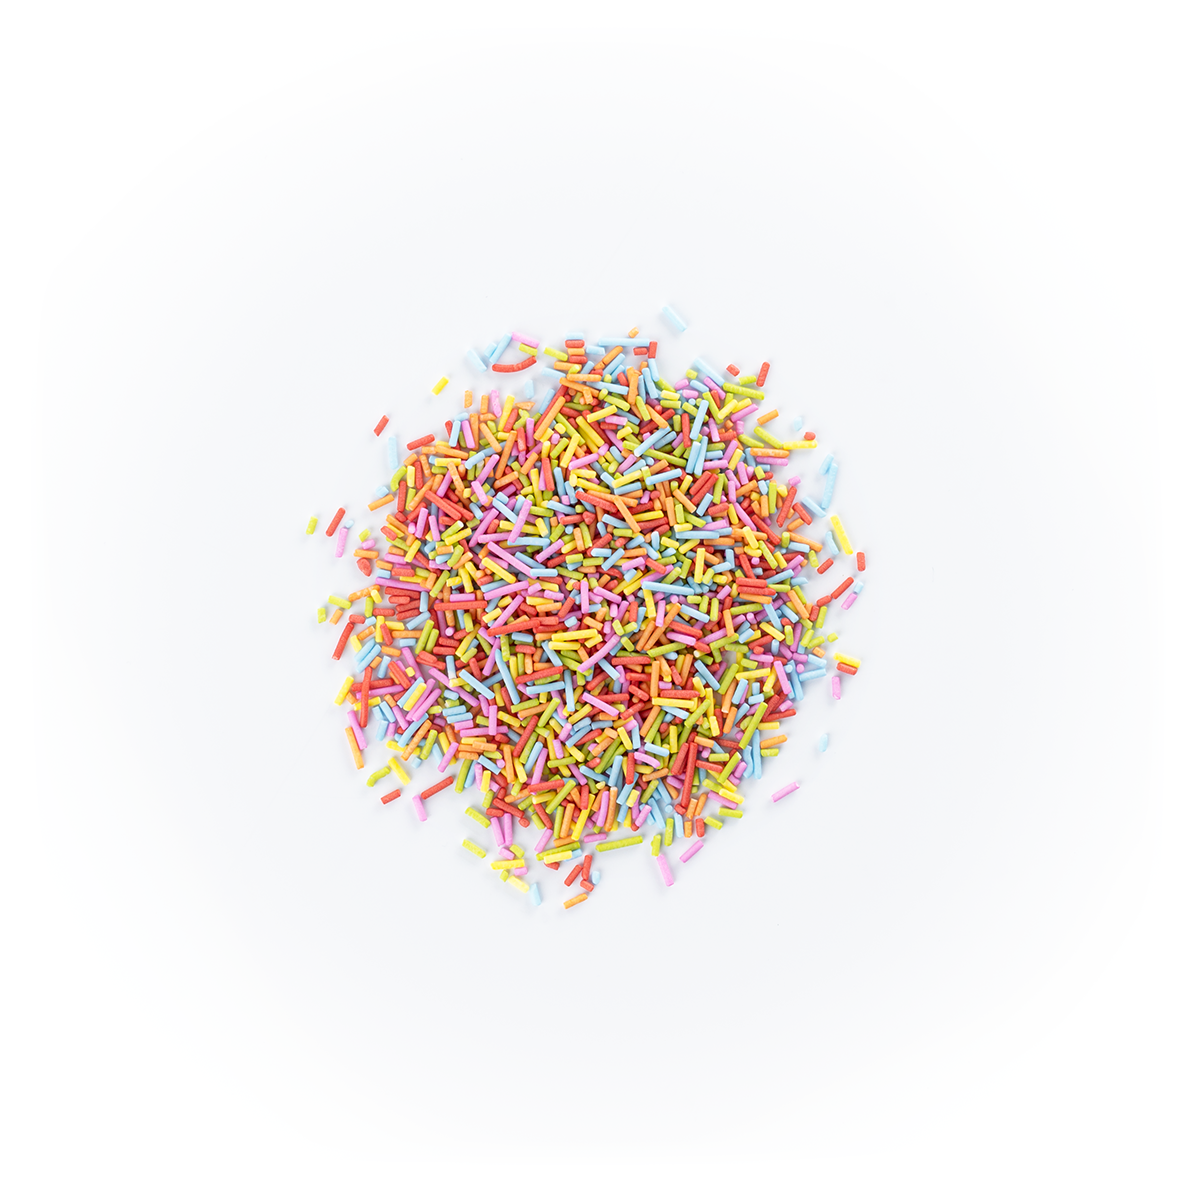 Wyroby cukiernicze: posypka cukrowa dekoracyjna w kształcie nitek